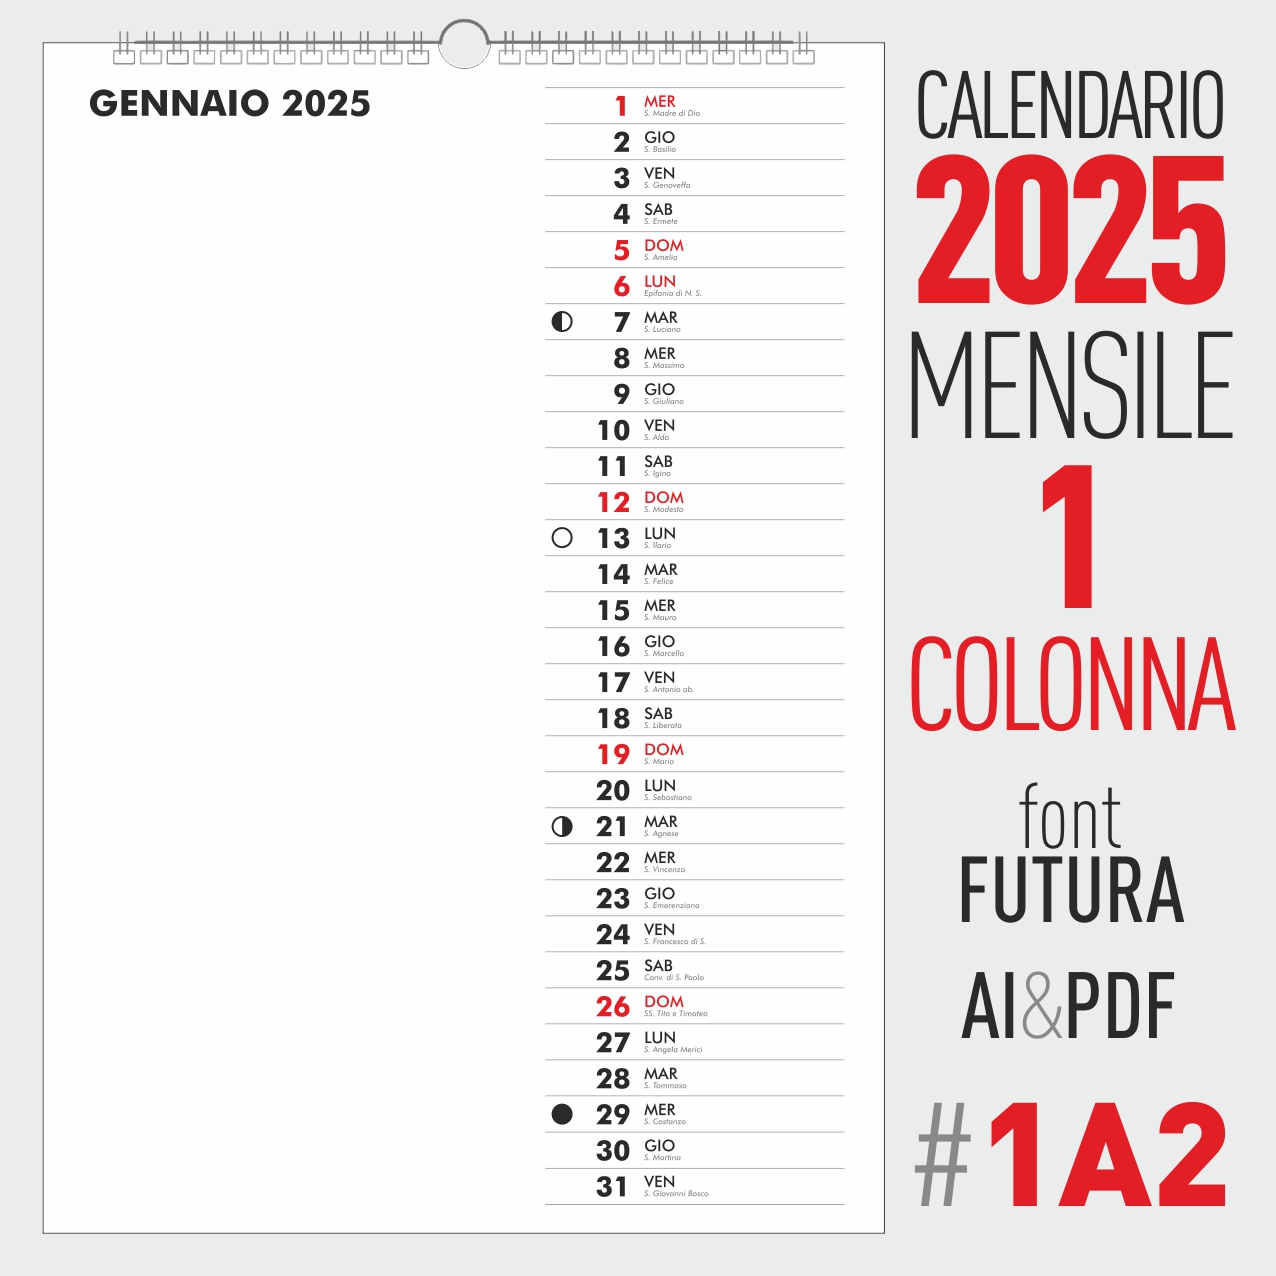 calendario 2025 mensile<br />
